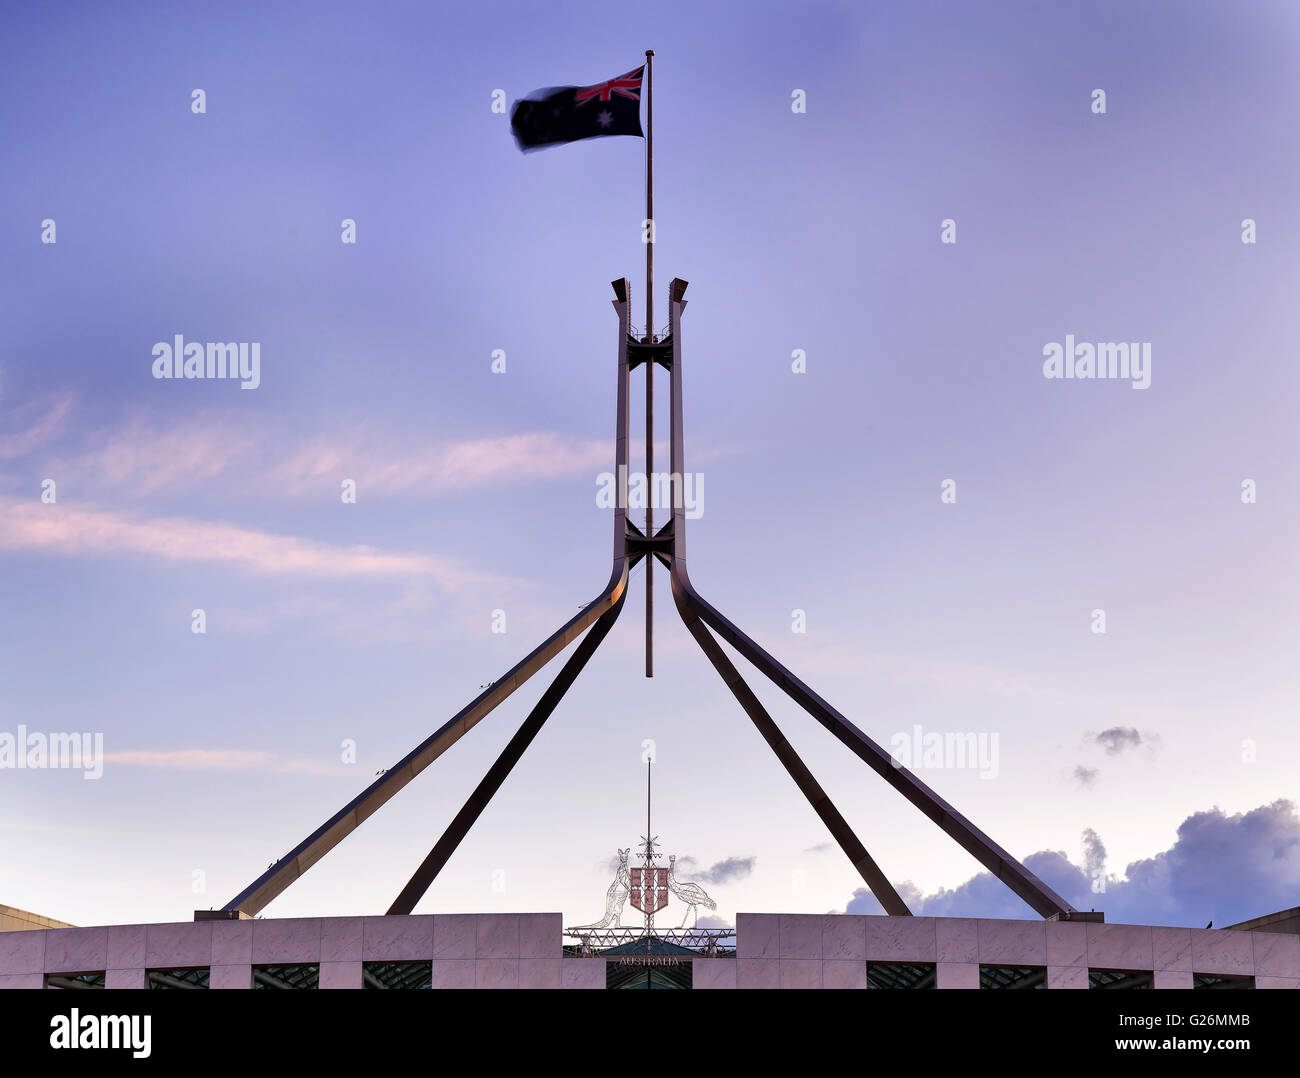 Drapeau national australien sur un flagpolle au sommet de la maison du parlement à Canberra, au coucher du soleil. Brandissant le drapeau est sur le vent. Banque D'Images